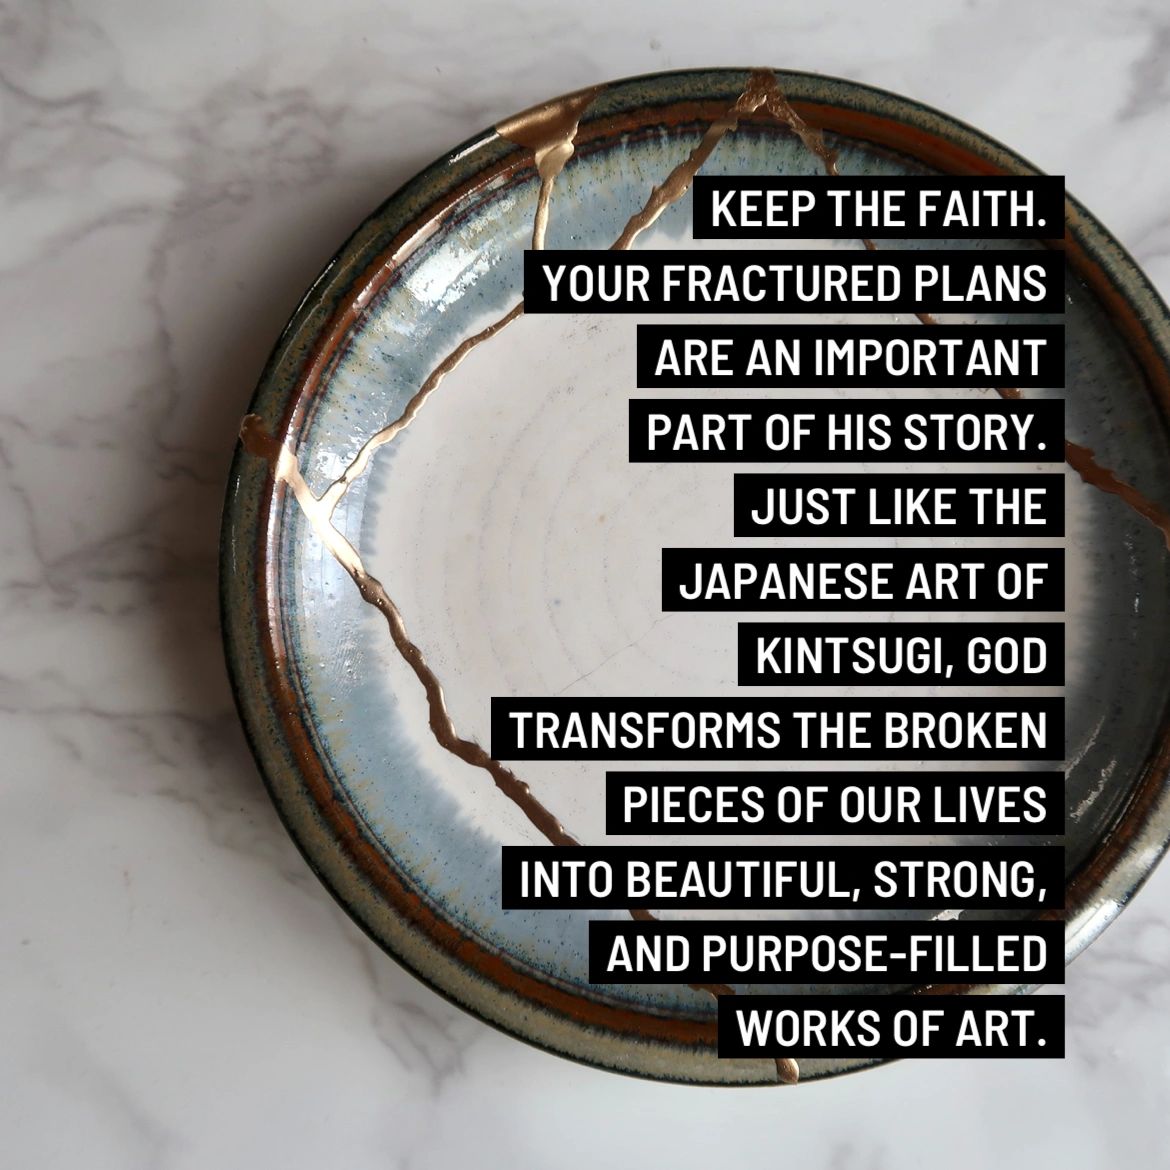 Beauty in the Broken Pieces